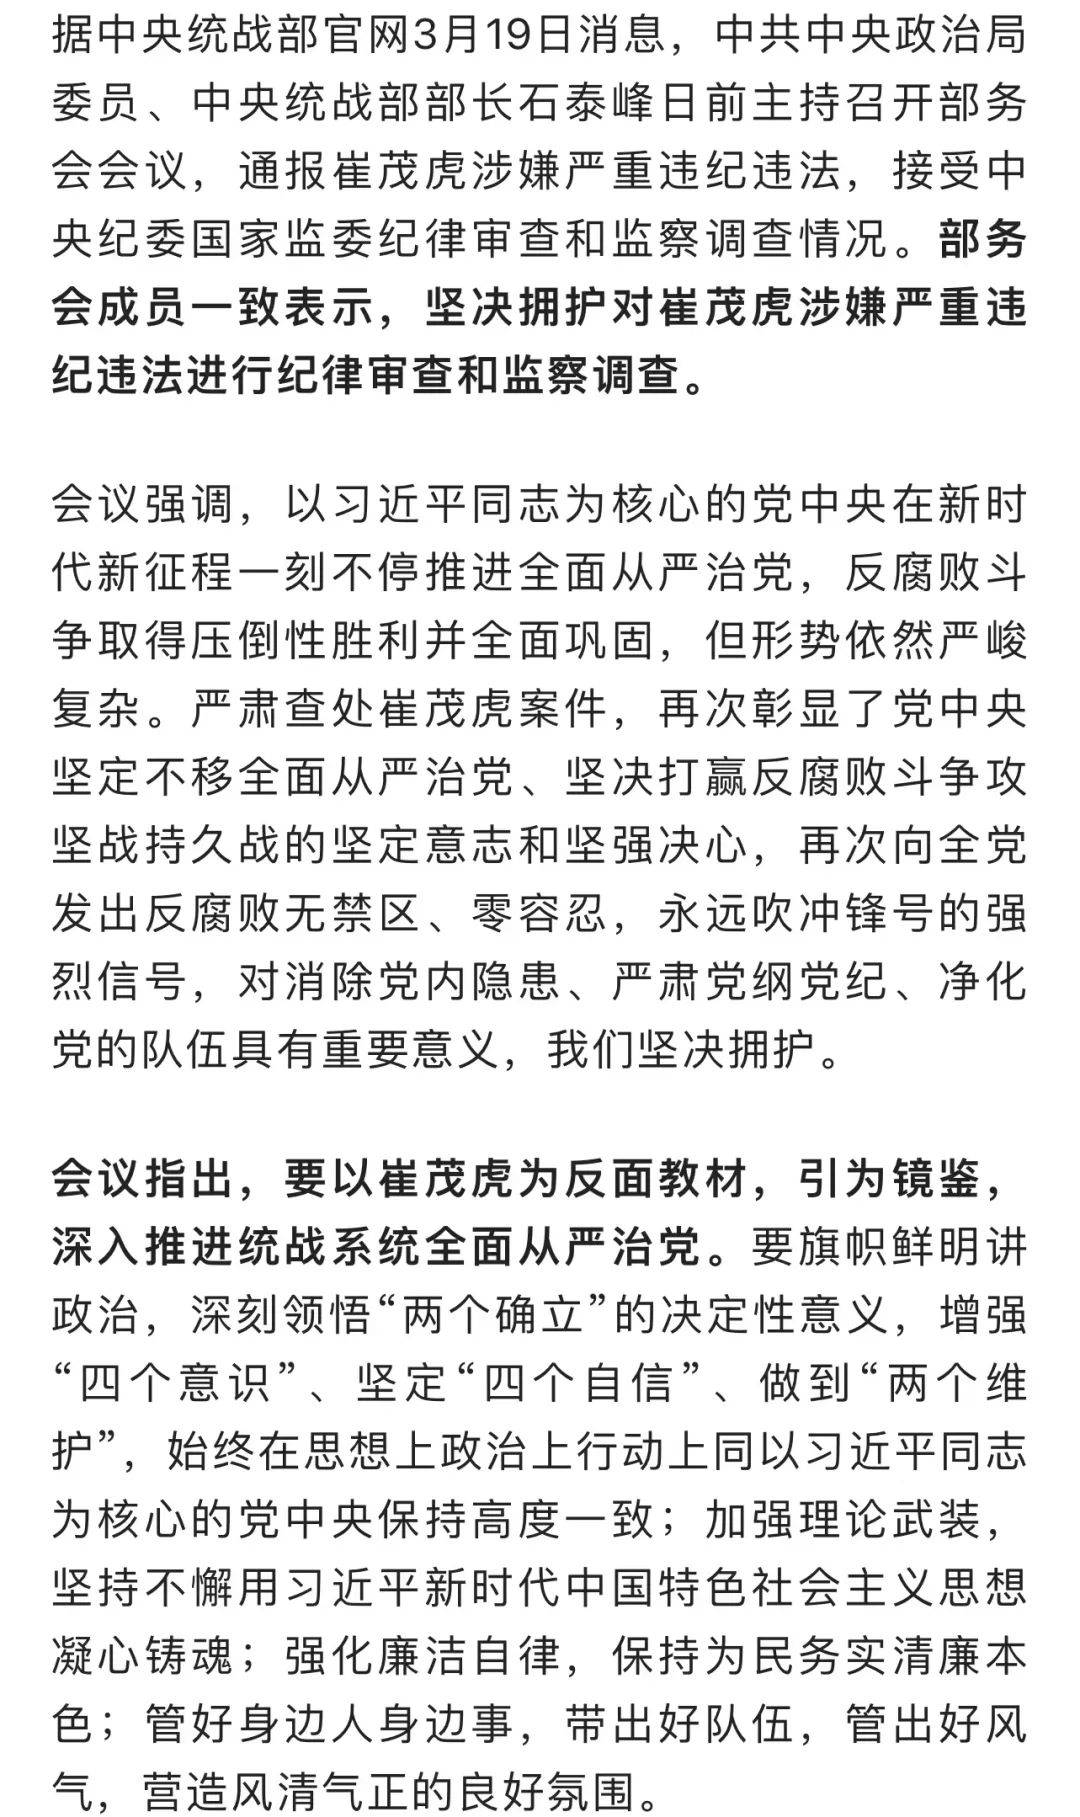 天之痕苹果版:中央统战部：坚决拥护对崔茂虎进行审查调查